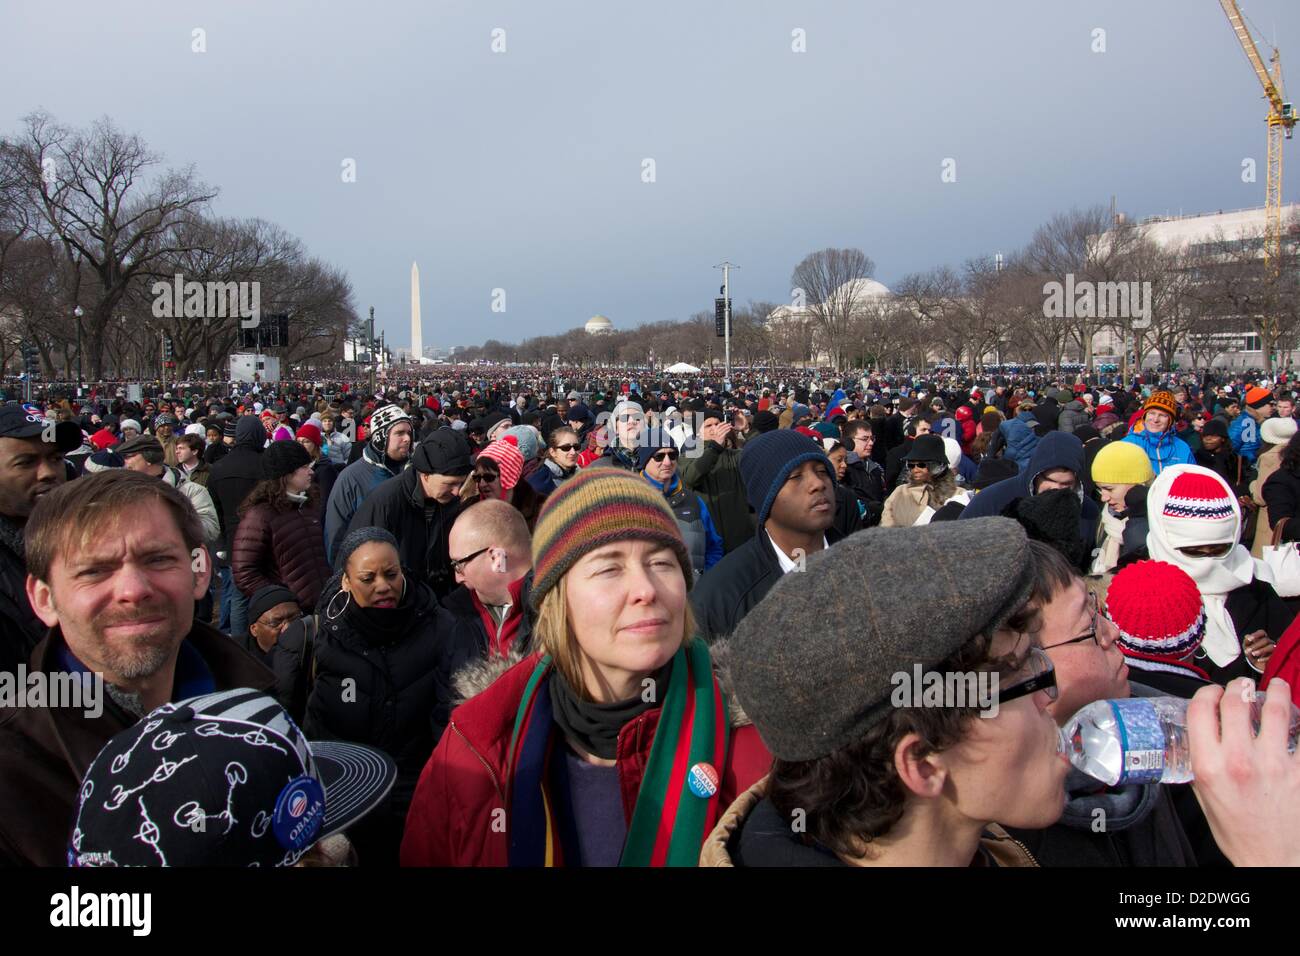 Washington DC. 21. Januar 2013, versammelt sich eine große Menschenmenge auf der National Mall für die Eröffnungszeremonie. Präsident Barack Obama offiziell vereidigt für eine zweite Amtszeit gestern wegen einer verfassungsrechtlichen Anforderung nimmt einen zeremoniellen Amtseid heute. Stockfoto